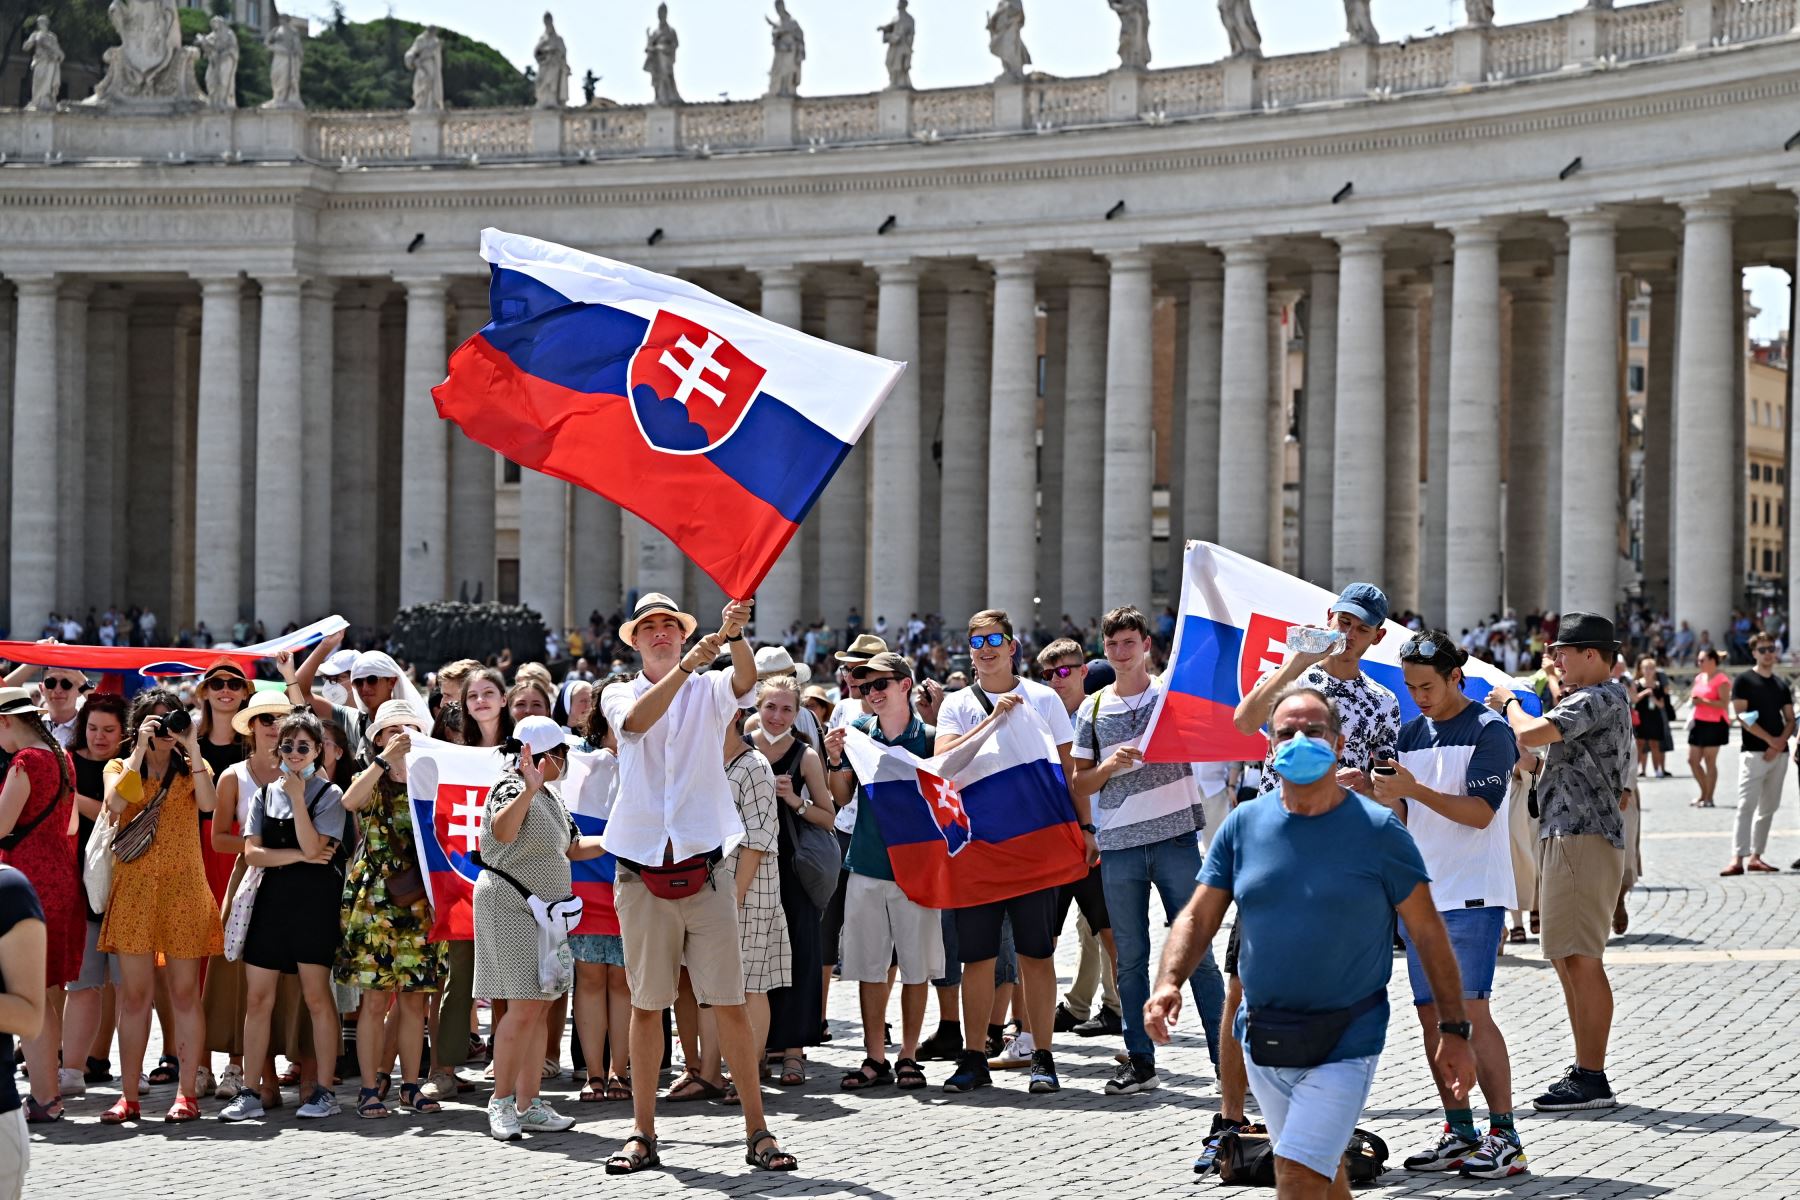 Los peregrinos eslovenos sostienen sus banderas nacionales mientras el Papa Francisco pronuncia la oración del Ángelus dominical desde la ventana de su estudio con vista a la Plaza de San Pedro en el Vaticano.
Foto: AFP